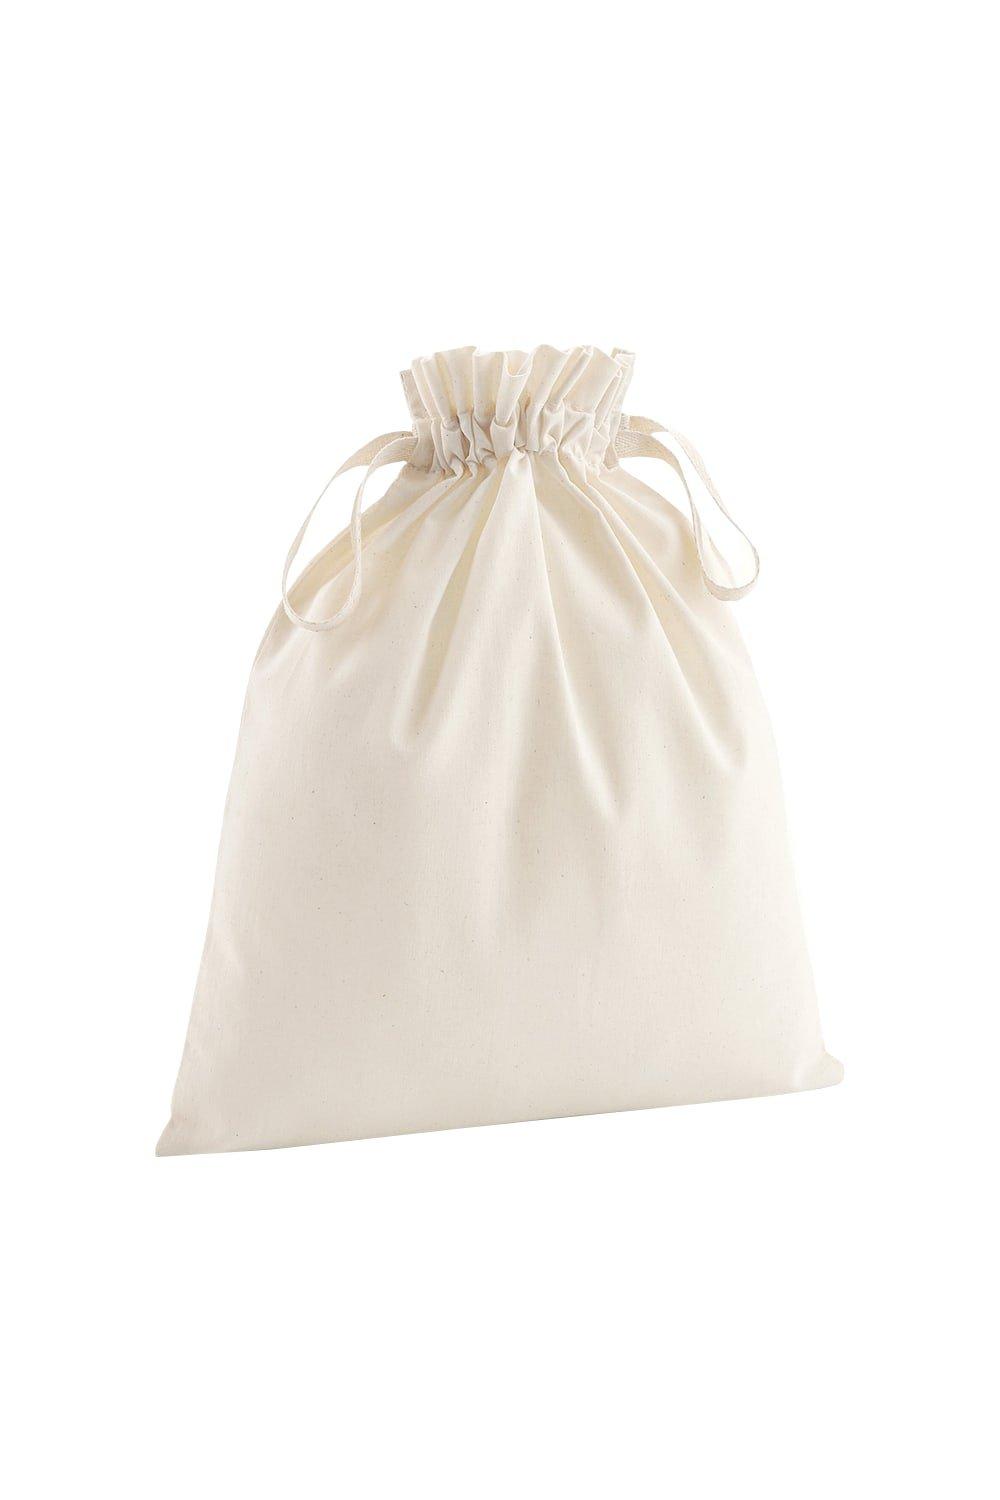 Мягкая сумка на шнурке из органического хлопка (2 шт.) Westford Mill, обнаженная пачка купюр для выкупа 100$ 80 шт 15 х 6 х 1 см в упаковке шт 1